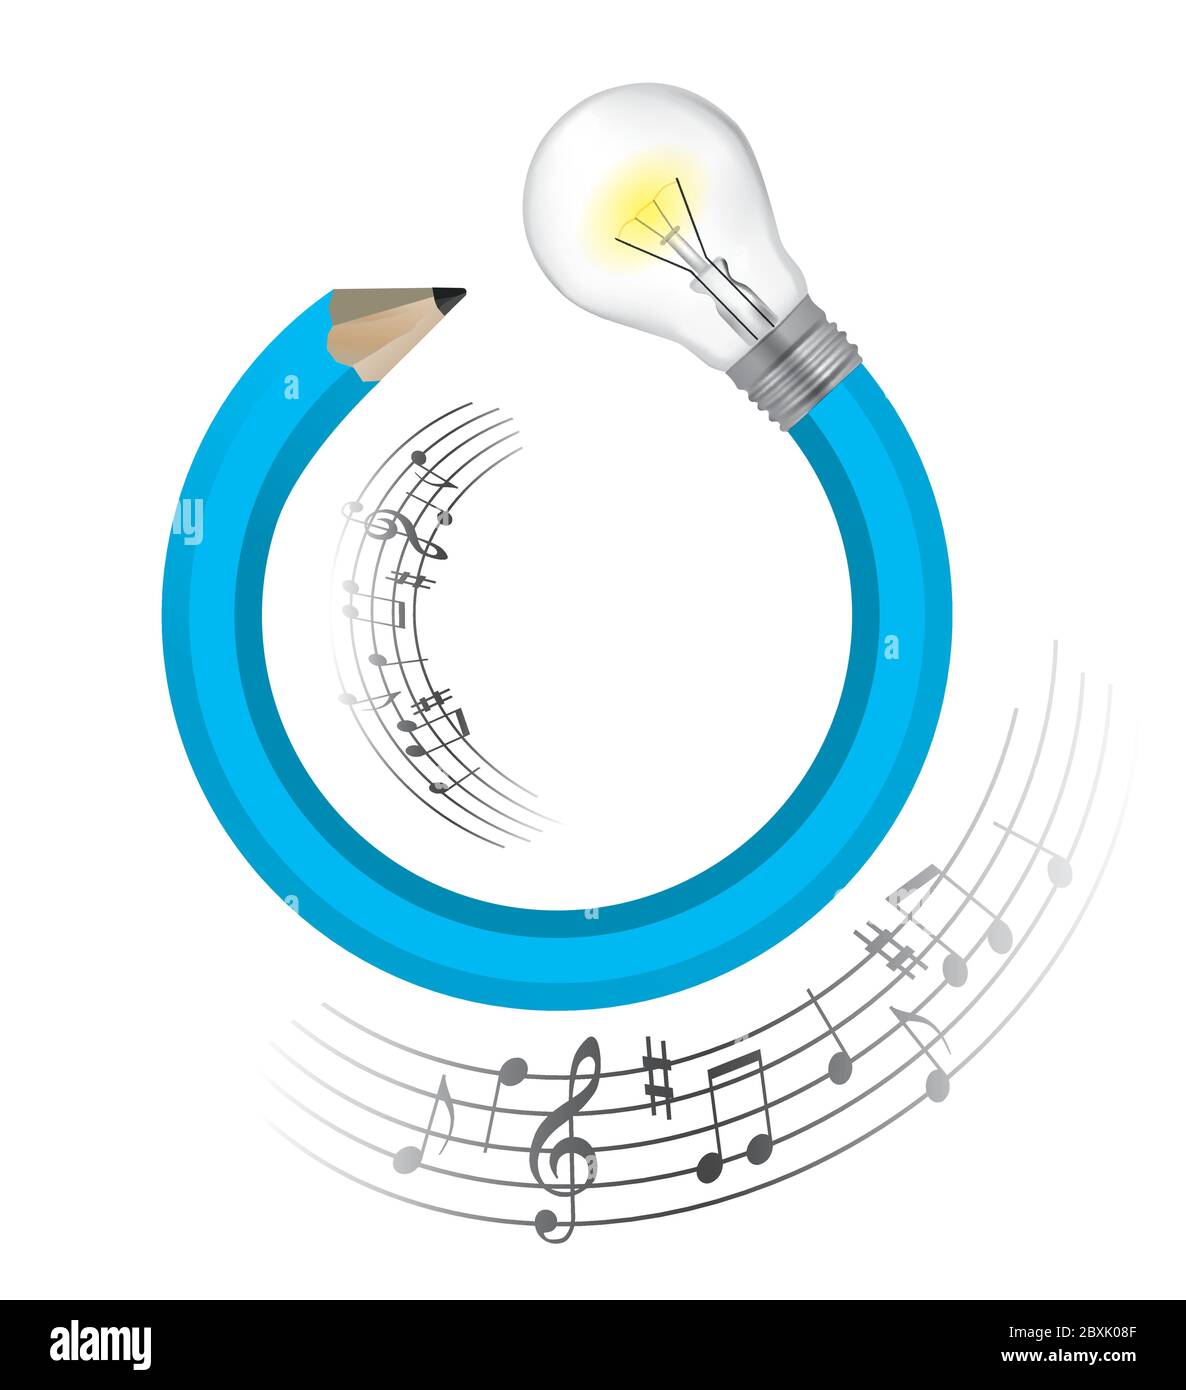 Musikalische Idee Kreativer Bleistift. Illustration von blauem gedrehtem Bleistift mit Glühbirne und Noten. Vektor verfügbar. Stock Vektor